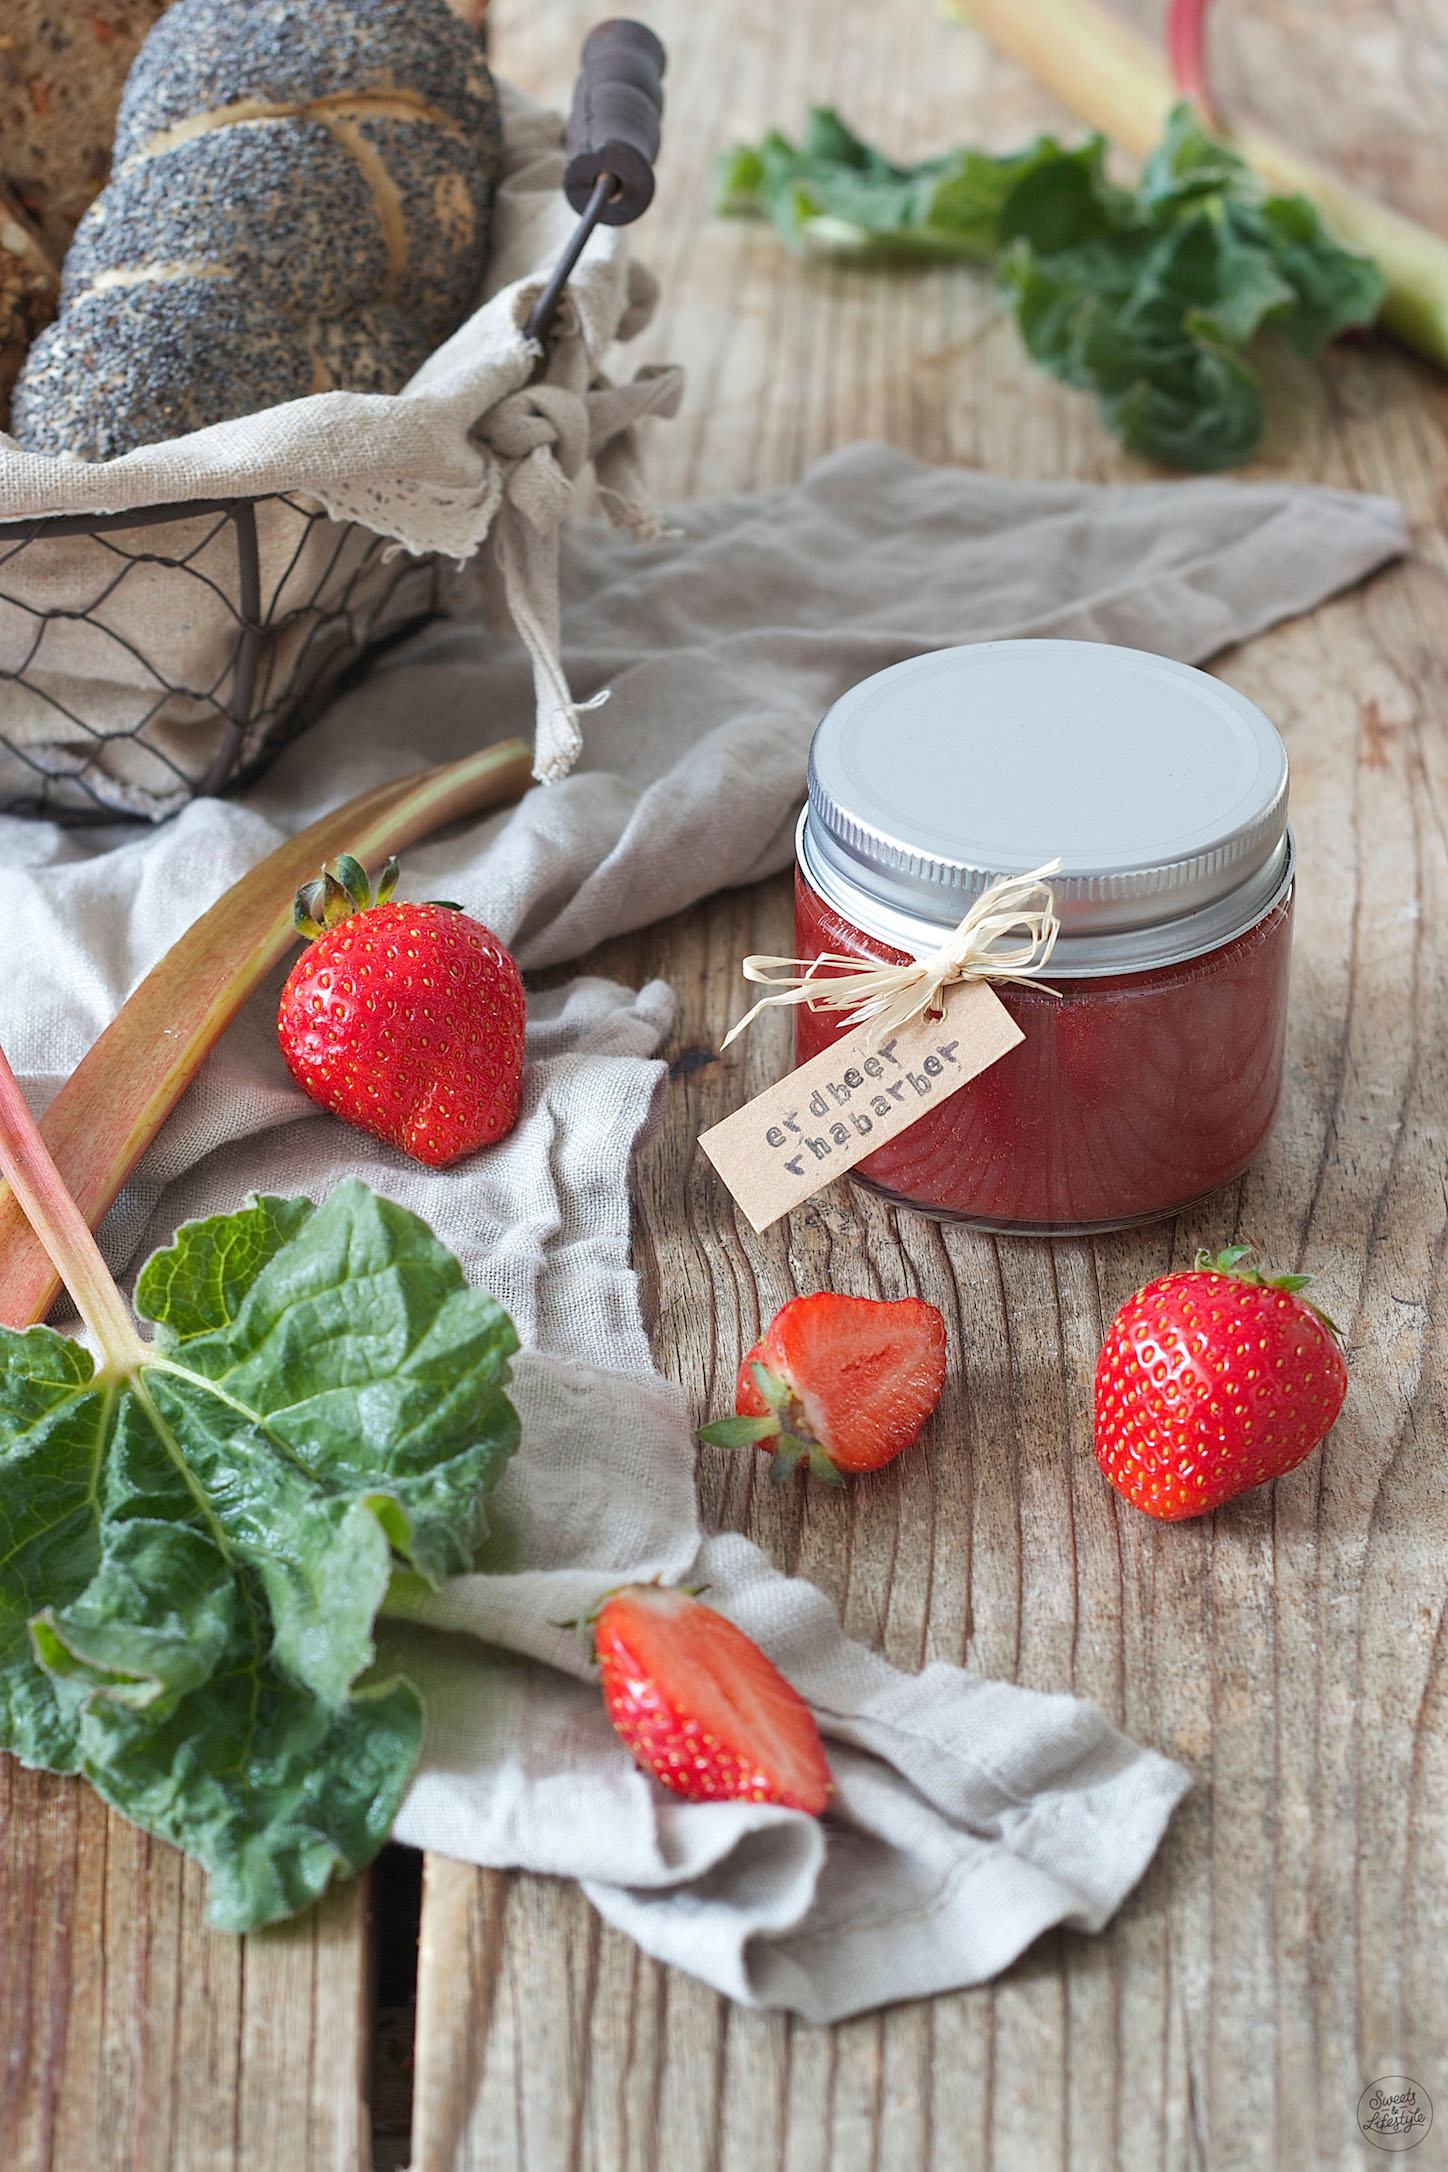 Erdbeer Rharbarber Marmelade Mit Einem Leichten Ha — Rezepte Suchen